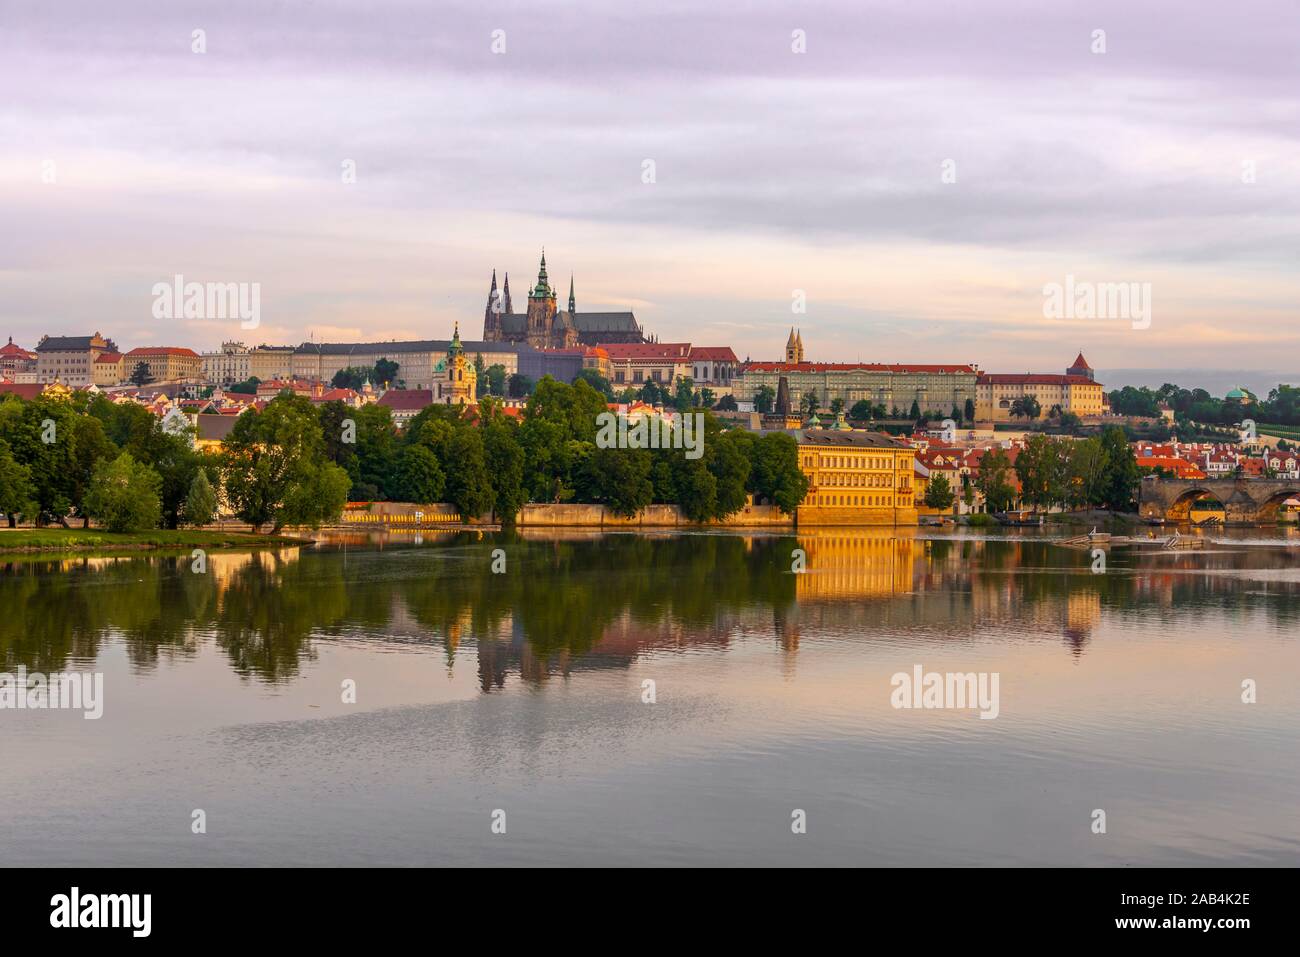 Vue sur la ville, la Vltava, le Pont Charles avec le Château de Prague et cathédrale Saint-Guy St, Prague, Bohemia, République Tchèque Banque D'Images